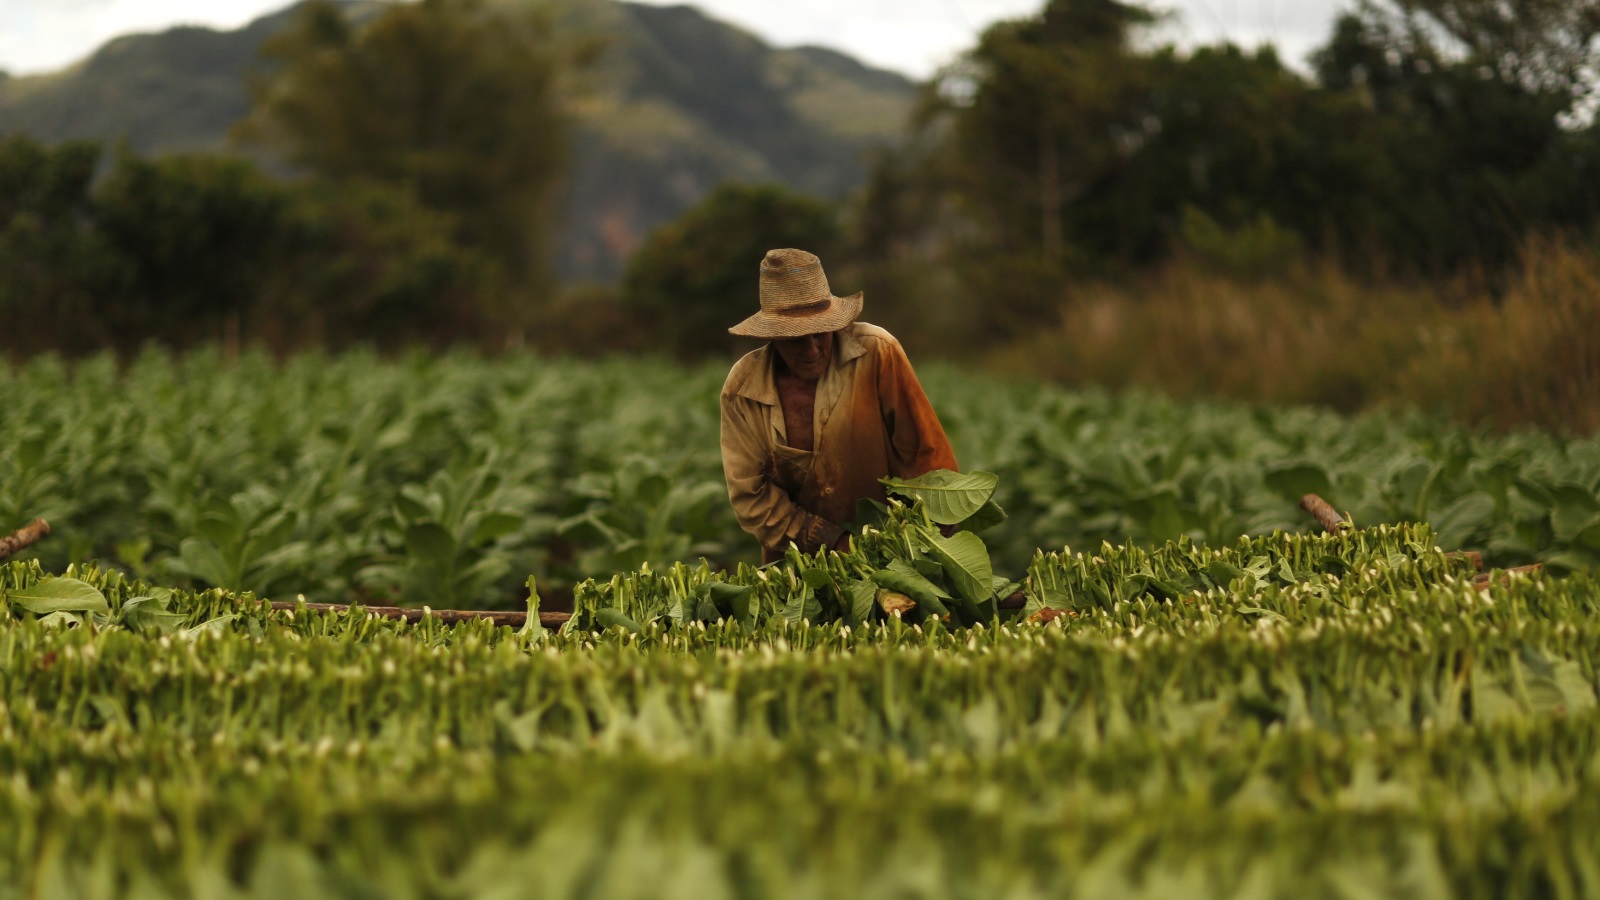 في سعيها لزيادة الإنتاج المحلي، سلمت الدولة أكثر من 3.7 مليون فدان من الأراضي لمزارعي القطاع الخاص الذين تساهم محاصيلهم الحالية فيما نسبته 57% من إجمالي الإنتاج الغذائي في البلاد (رويترز)